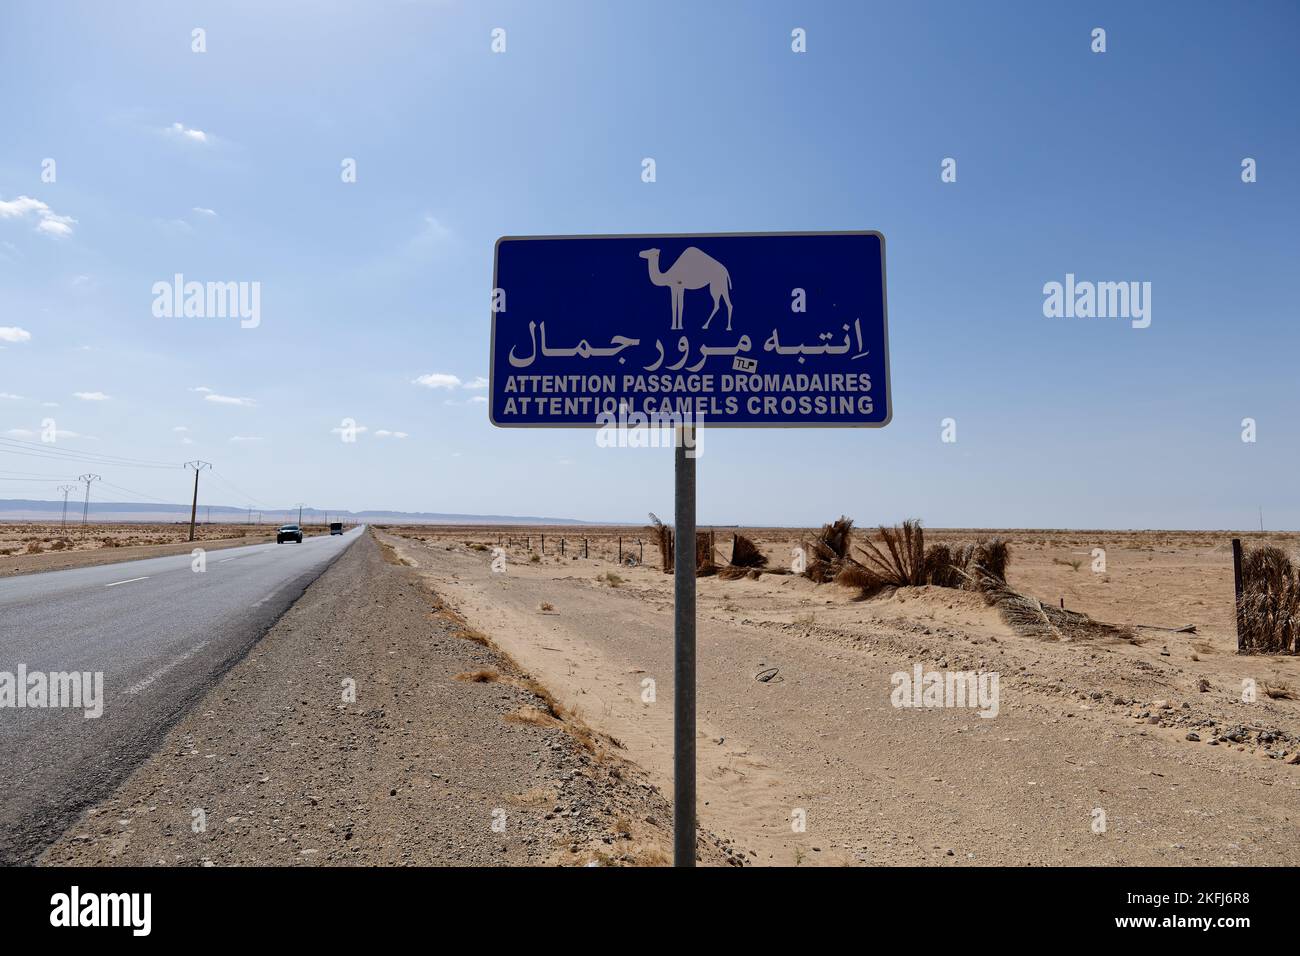 Signalisation routière attention passage de chameaux. Méfiez-vous des chameaux qui traversent la route dans le panneau du désert. Conduire et se déplacer avec prudence. Respecter les animaux. Banque D'Images